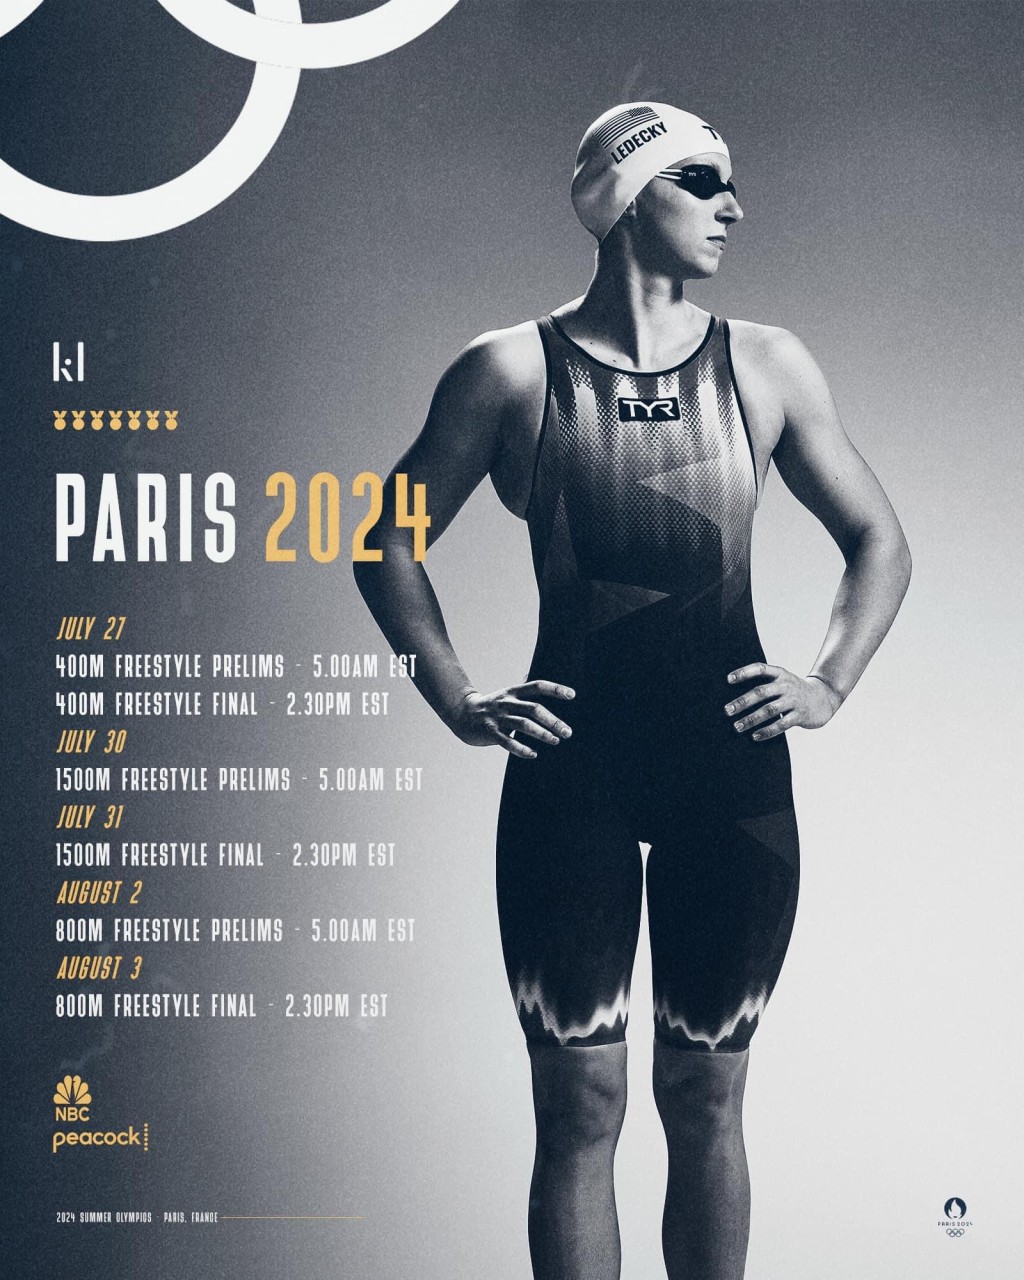 列迪姬（Katie Ledecky）在巴黎奥运共参加4个项目，若800米自由式夺牌将进一步破纪录。 facebook